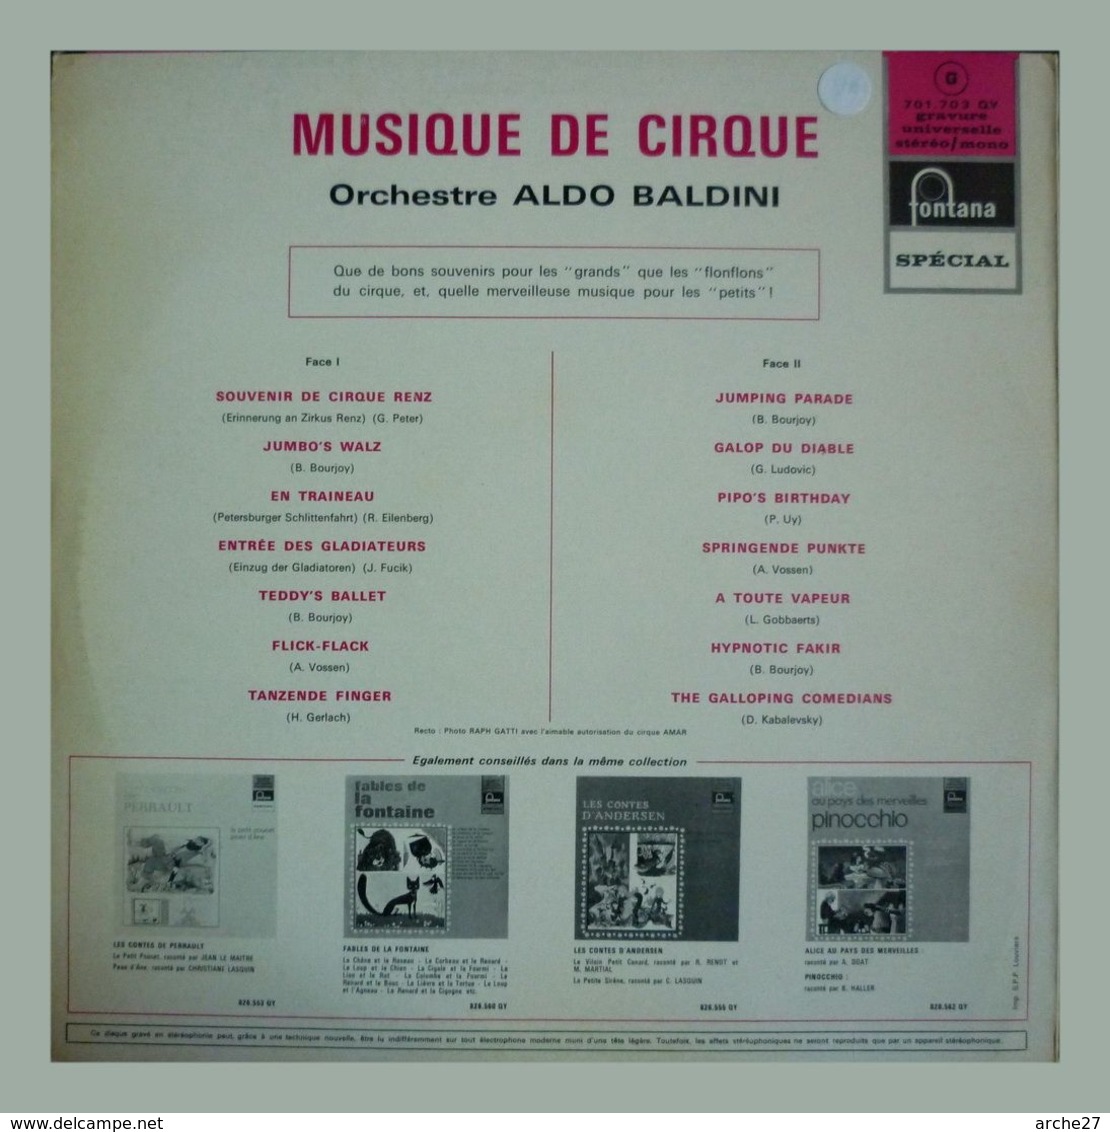 MUSIQUES DE CIRQUE - LP - 33T - Disque Vinyle - Orchestre Aldo Baldini - 701703 - Musicales